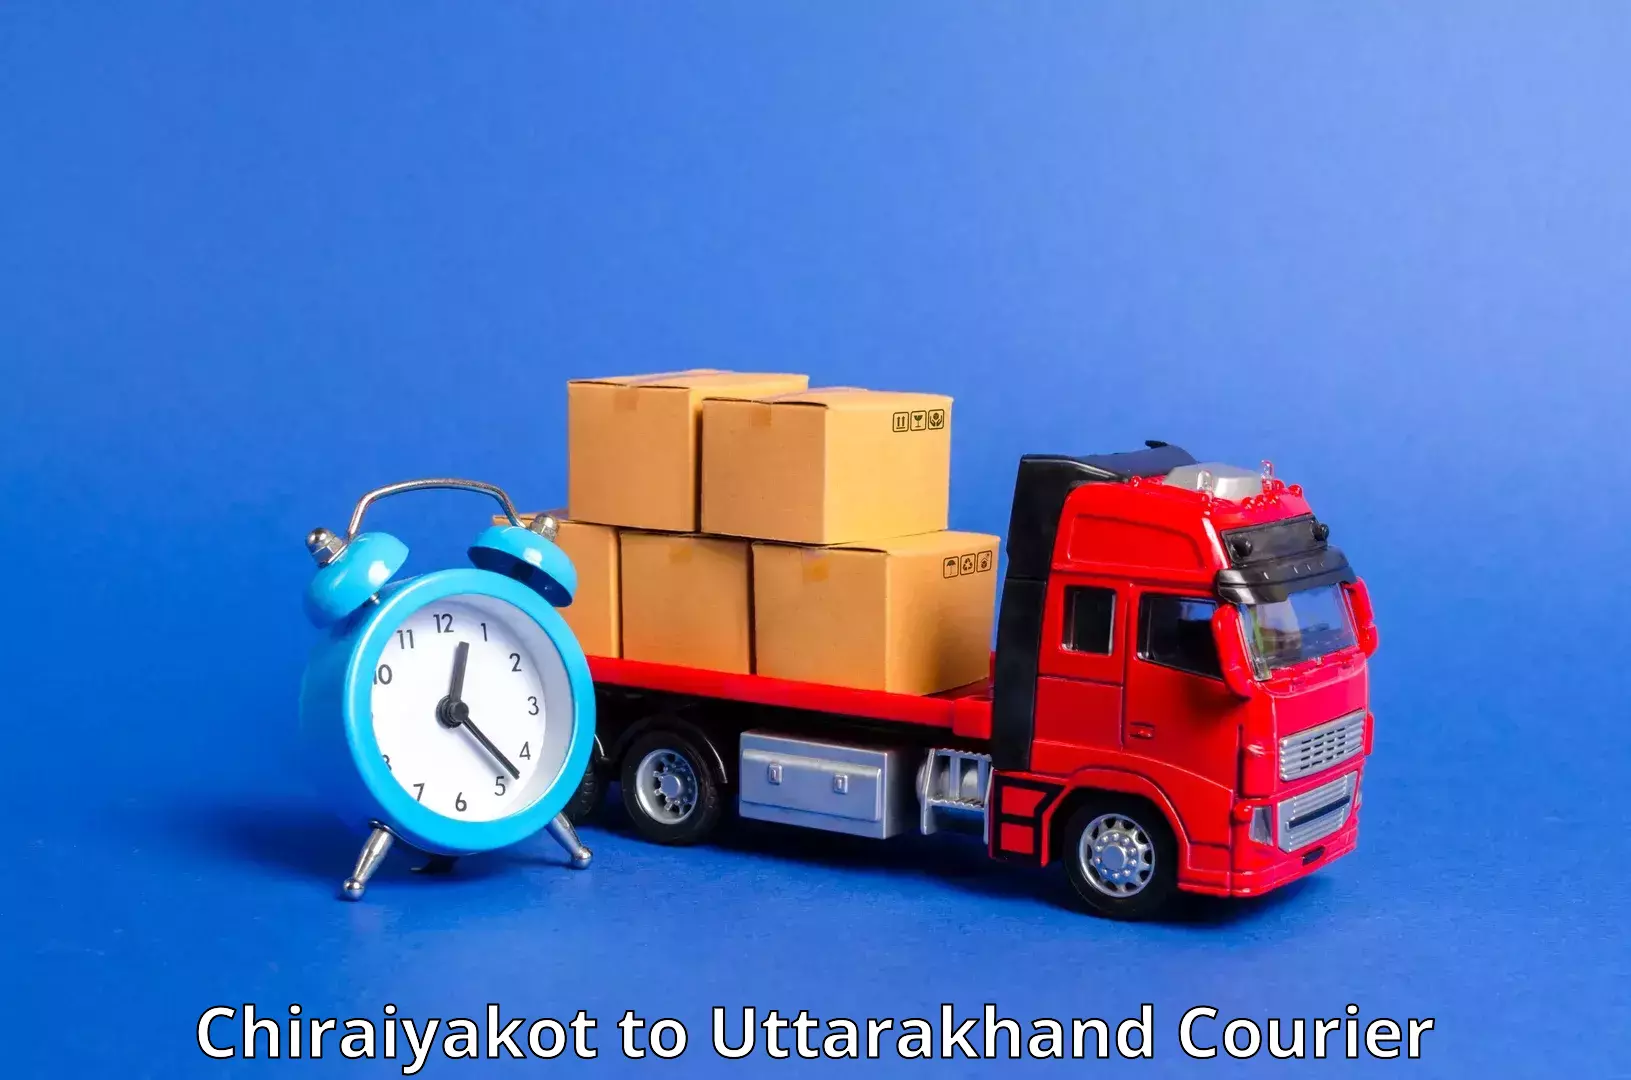 Same-day delivery solutions Chiraiyakot to Uttarakhand